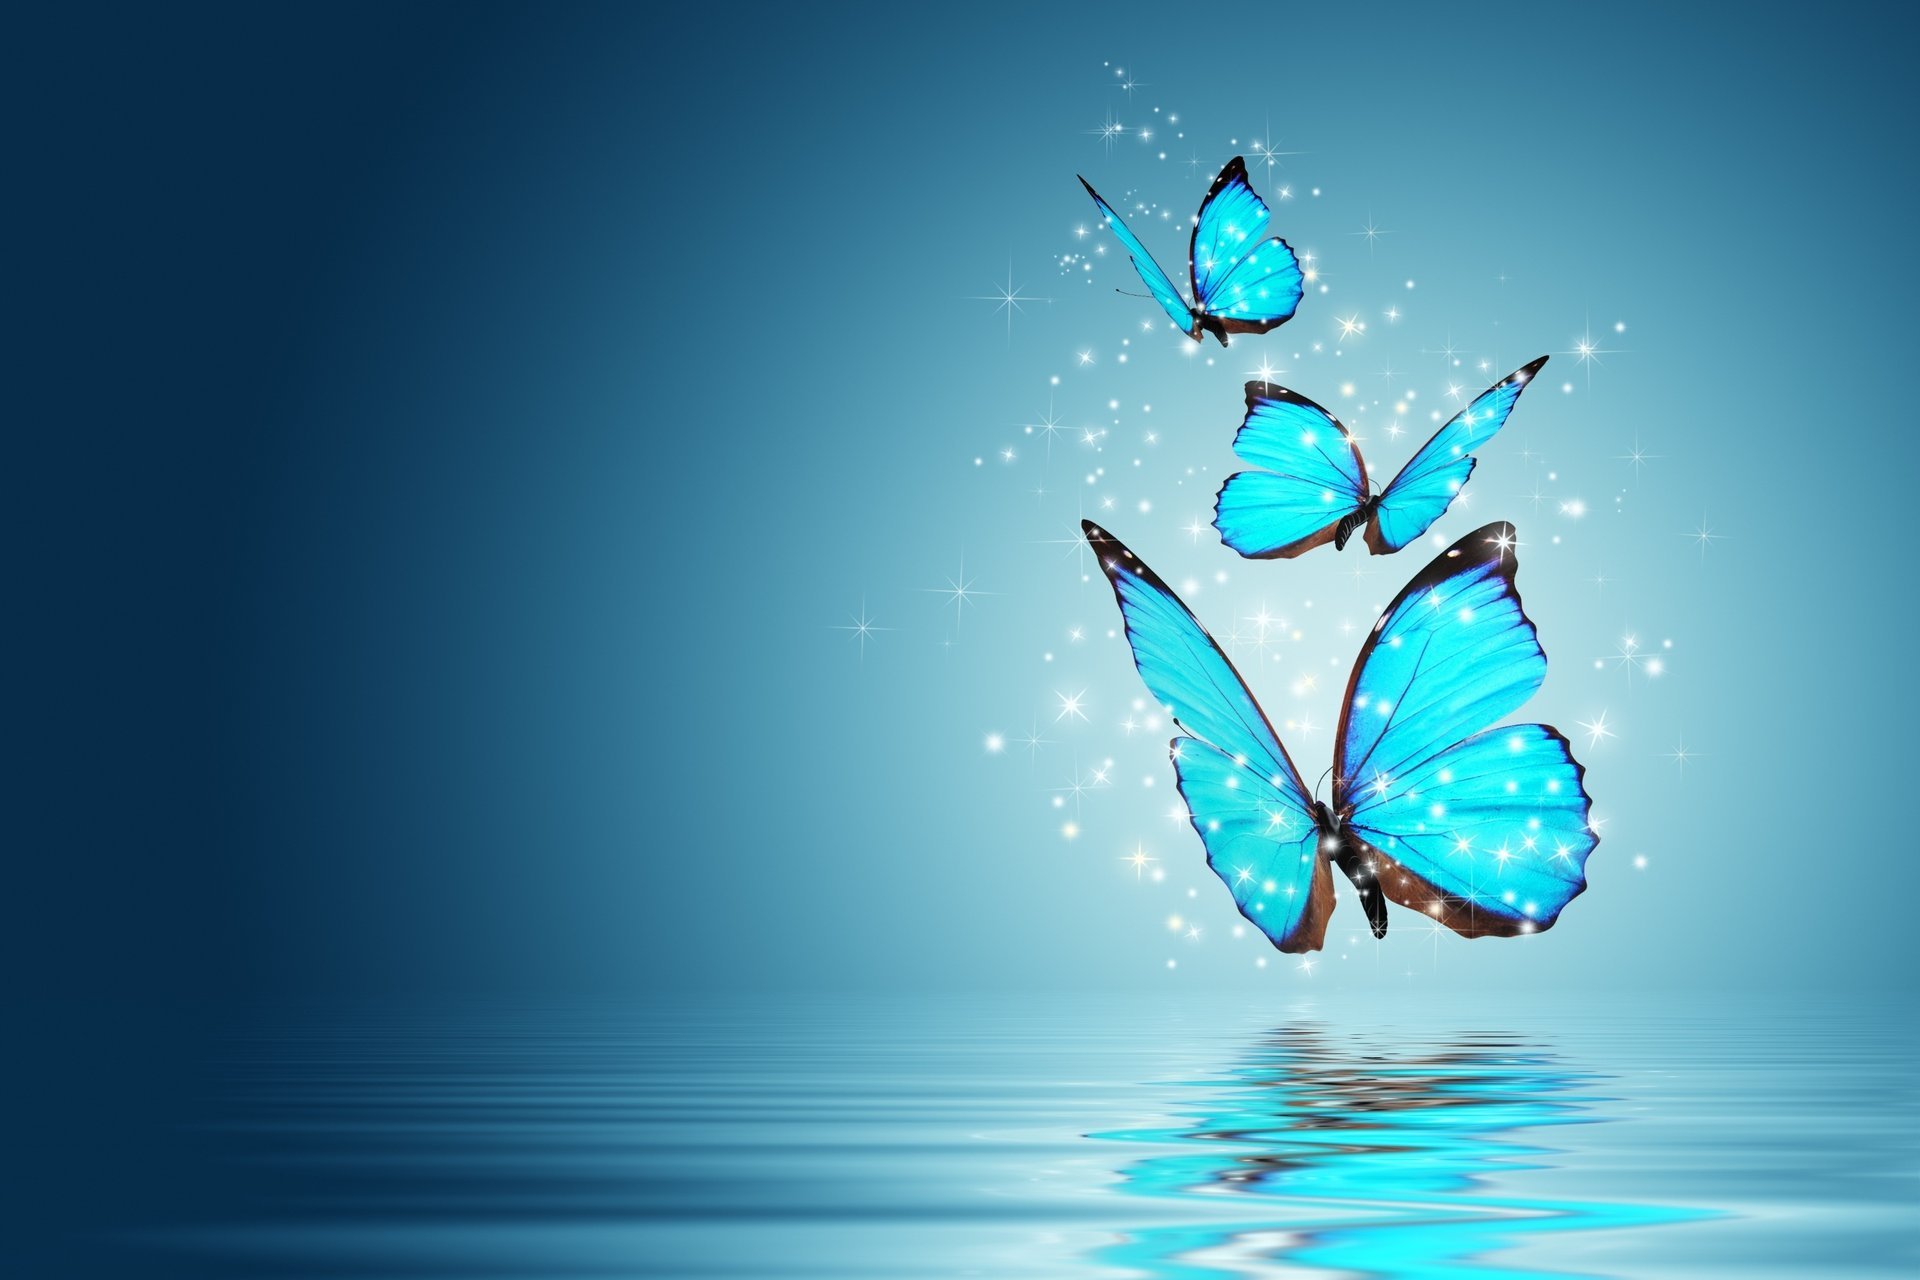 Искрящиеся бабочки голубого цвета с чёрным окомлением летят над водой, отражаясь в ней